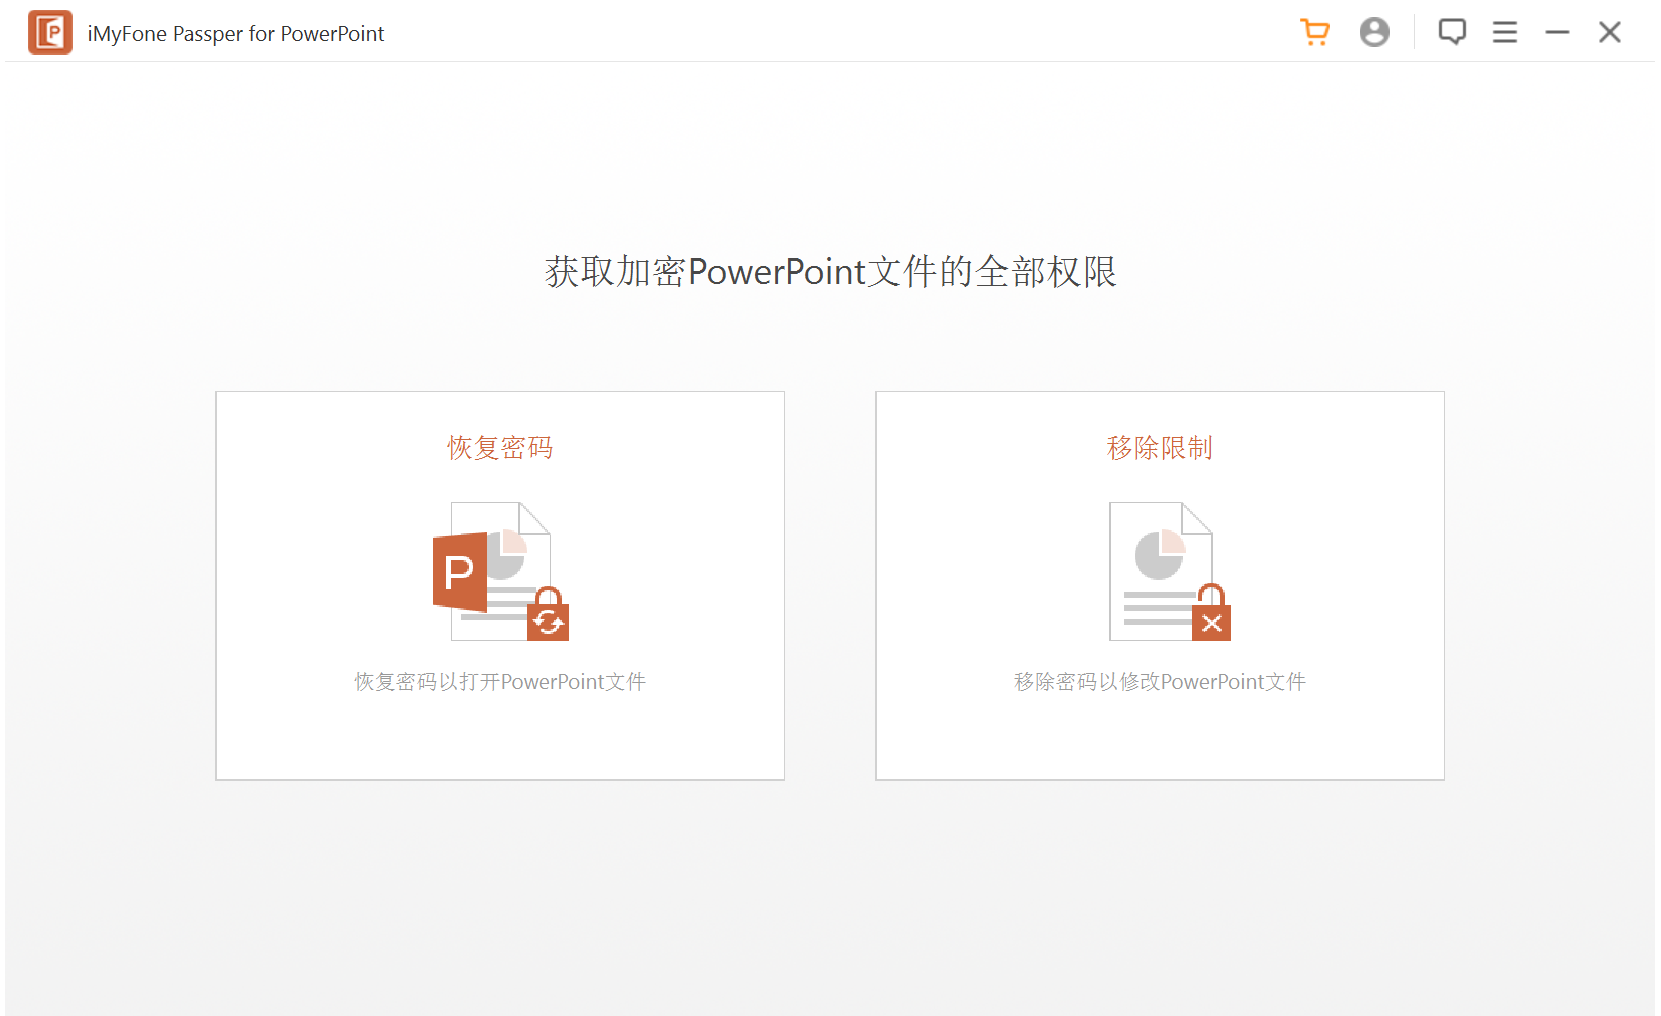 PPT解密软件 Passper for PowerPoint v3.7.0 破解版（免注册码）